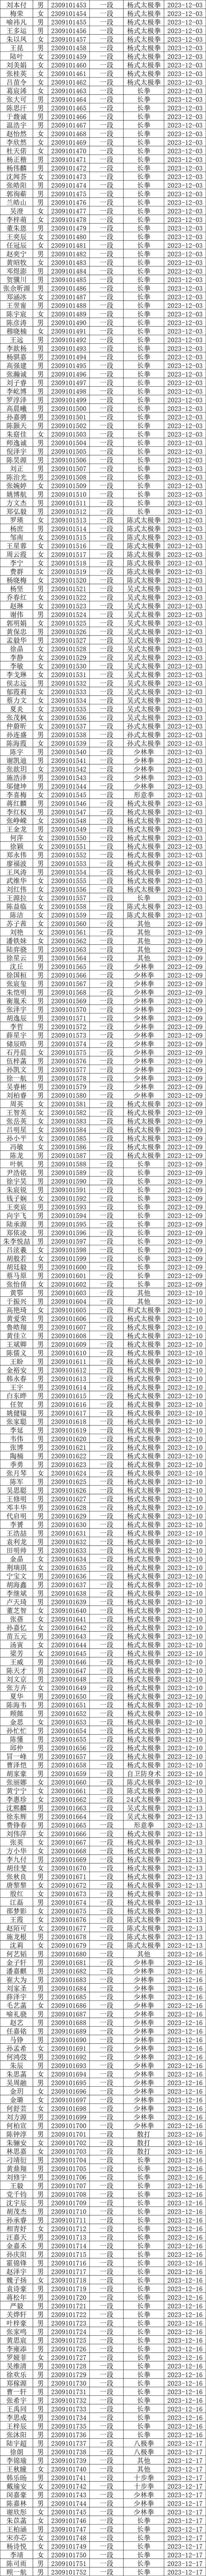 《中国武术段位制》2023年度上海市晋段人员段位号汇总表